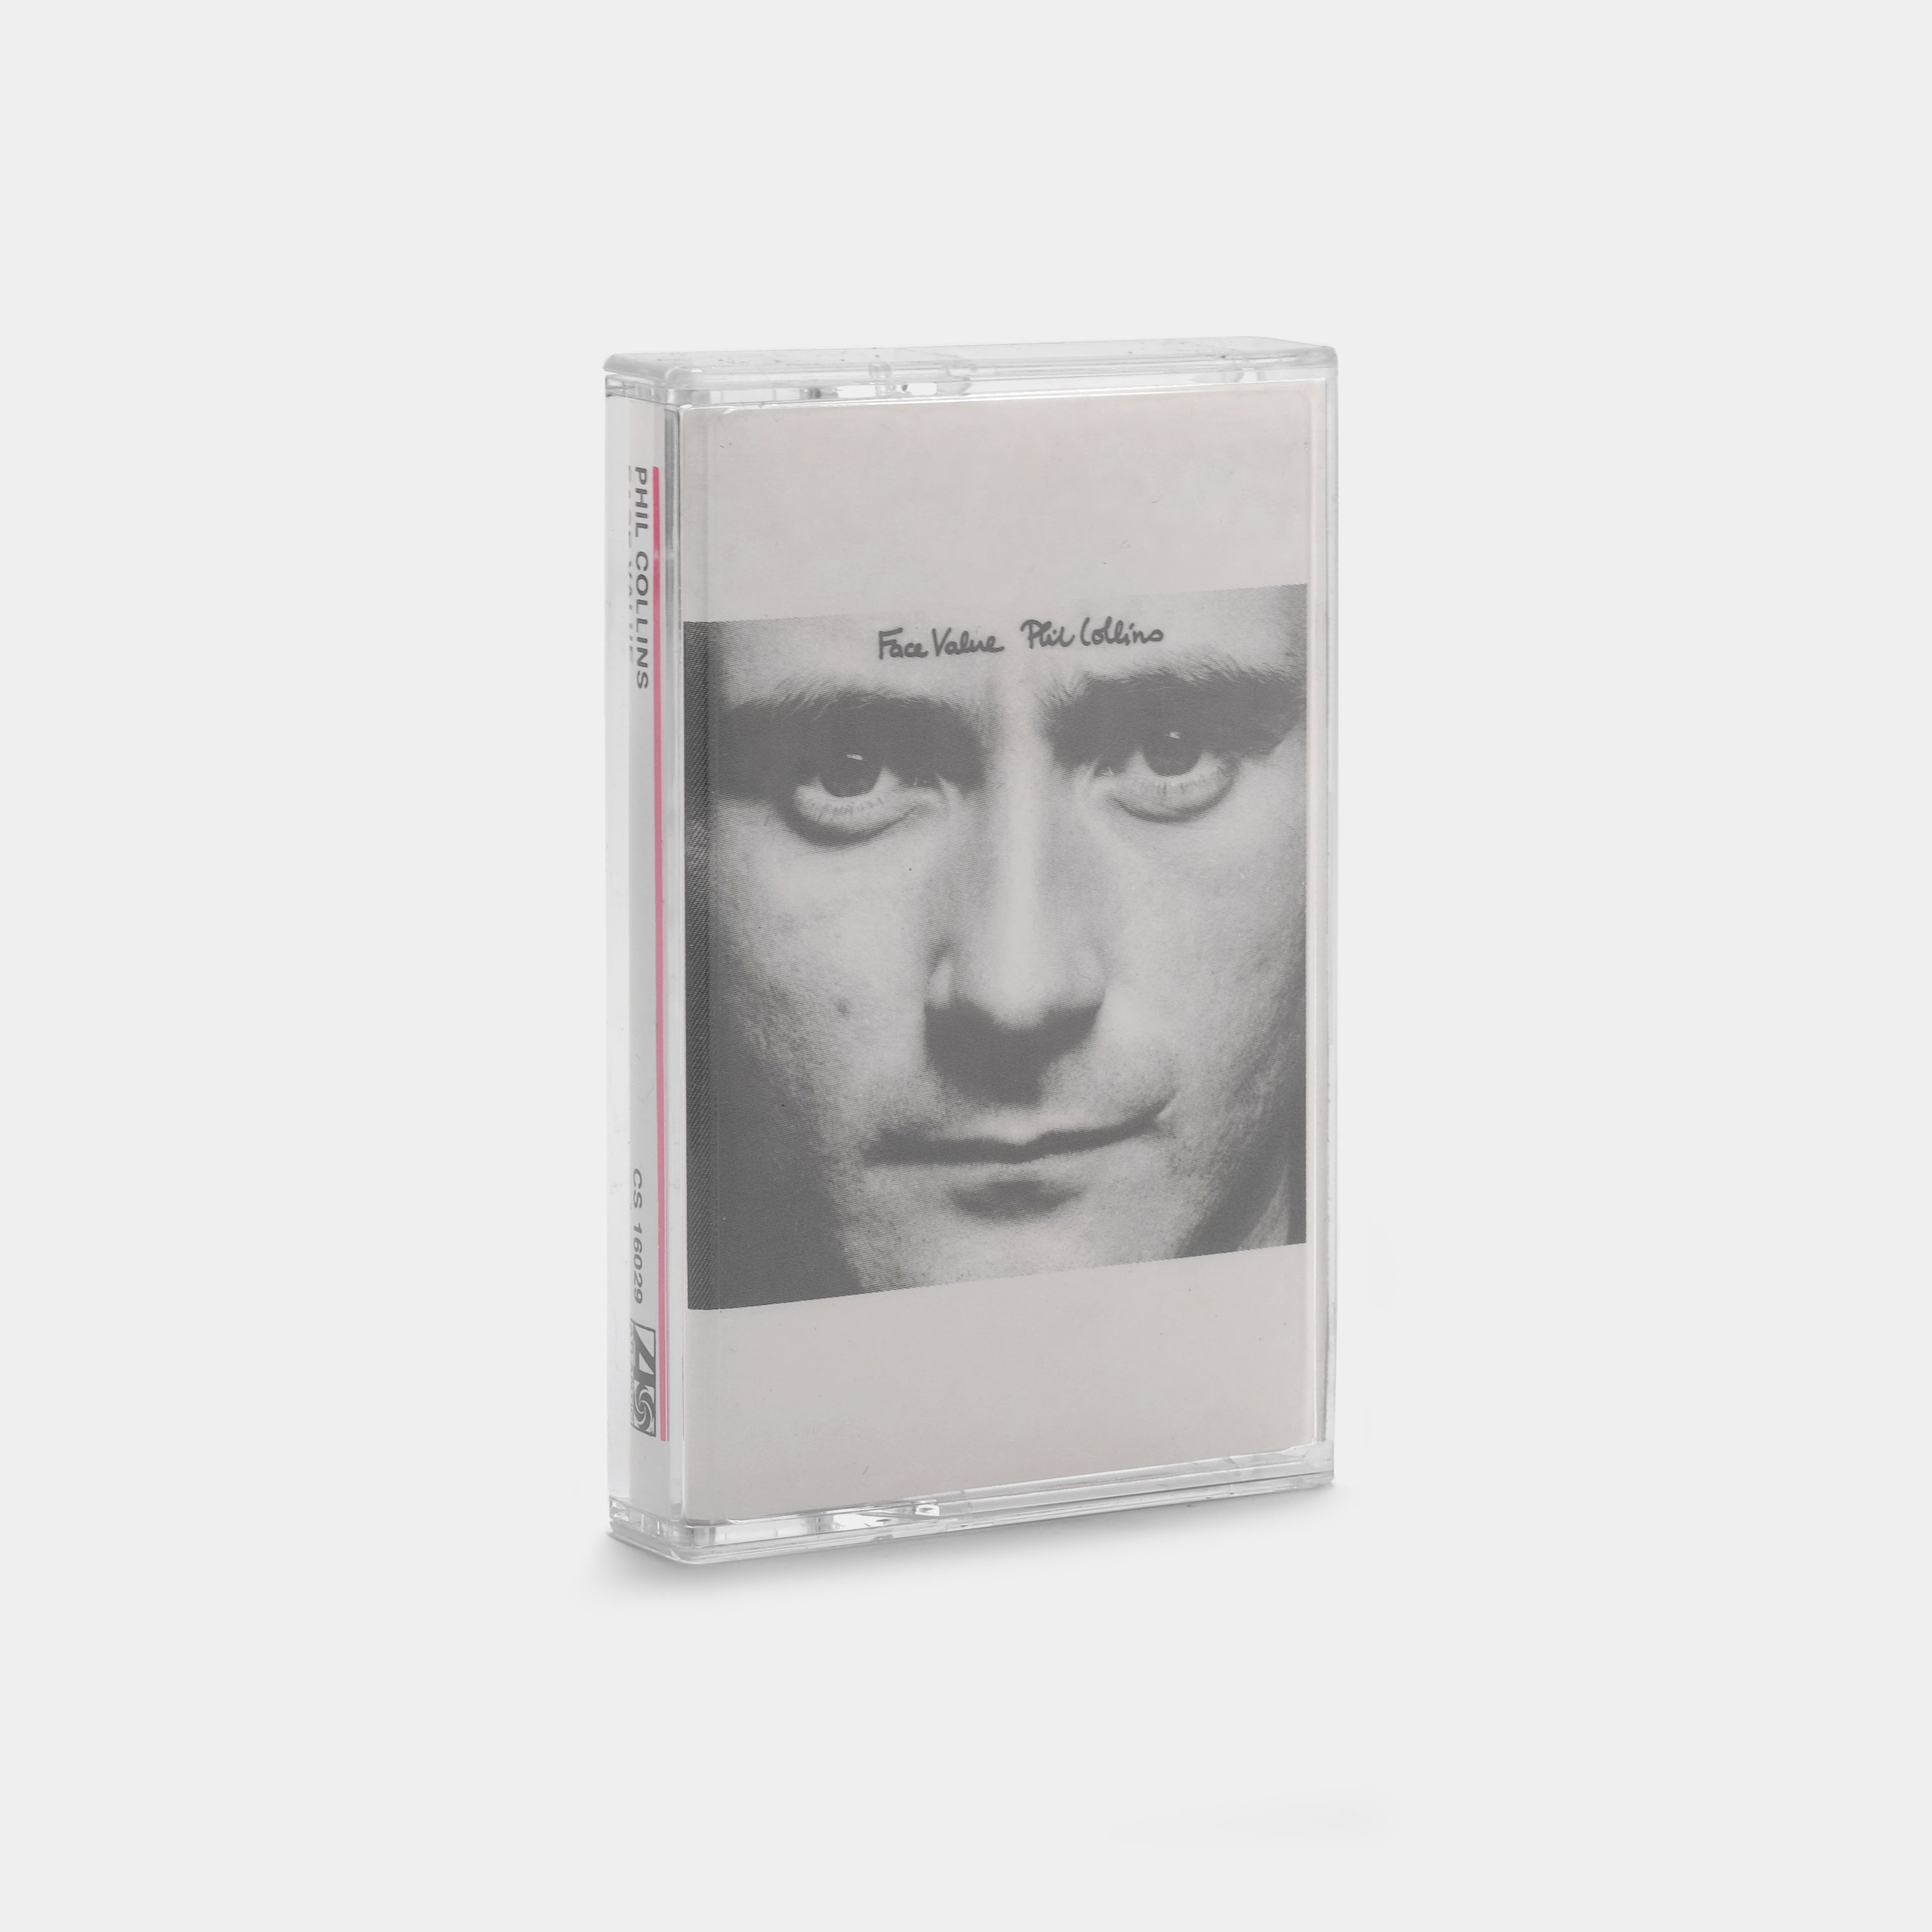 Phil Collins - Face Value Cassette Tape